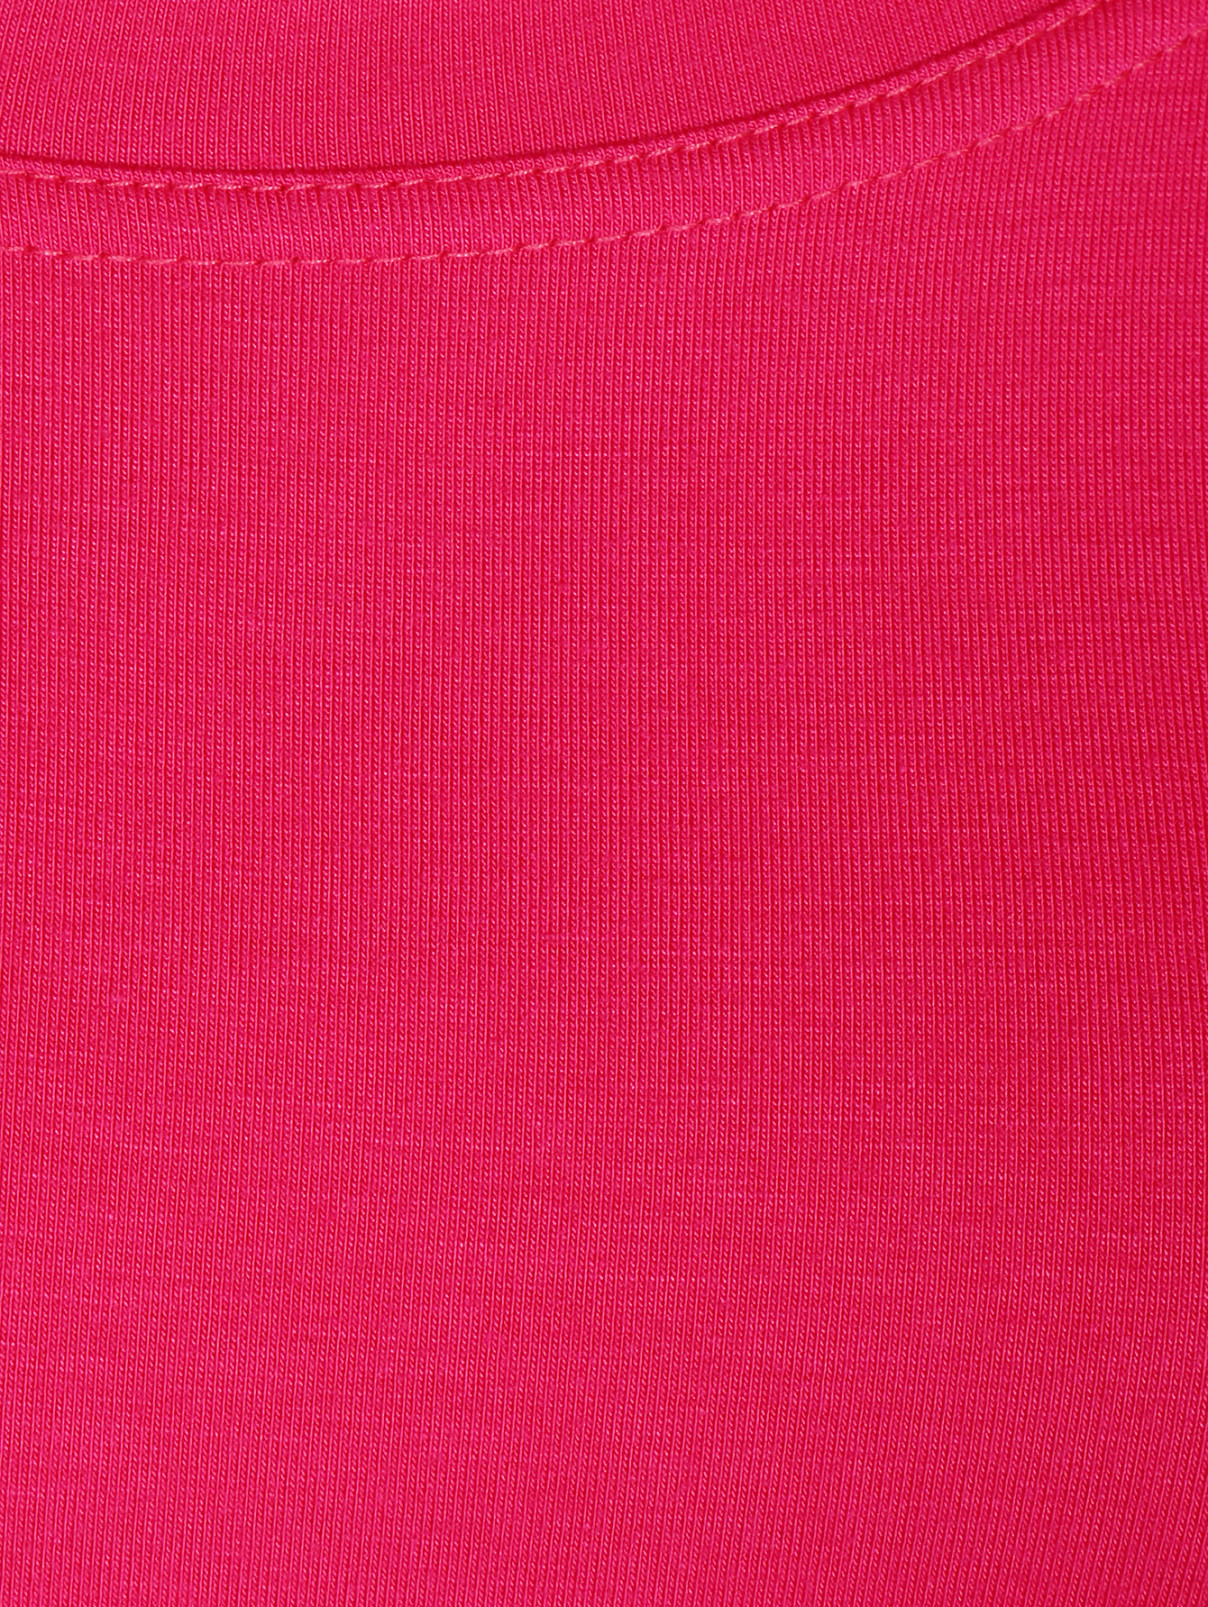 Трикотажное платье свободного кроя Vivienne Westwood  –  Деталь1  – Цвет:  Розовый